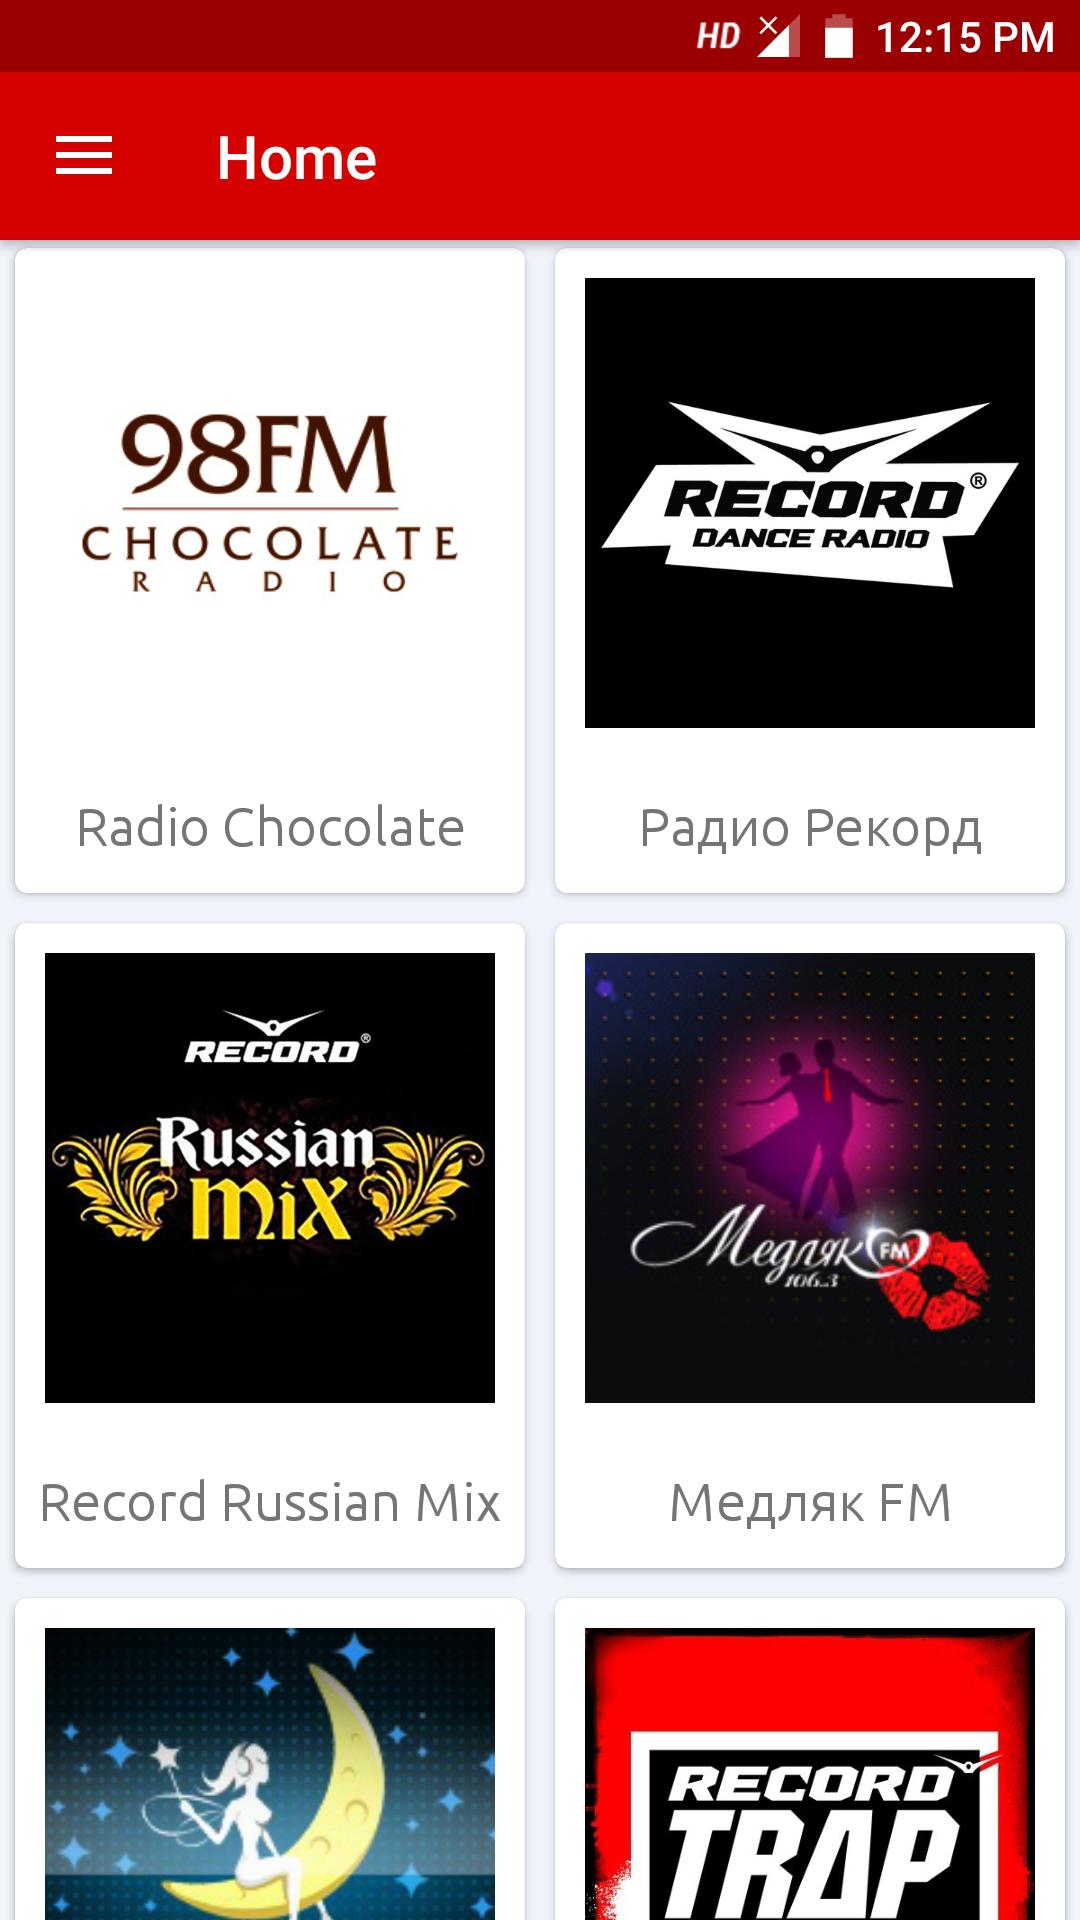 Рашен фм радио. Радио fm. Радио рекорд волна. Russian Mix радио. Радио России fm.